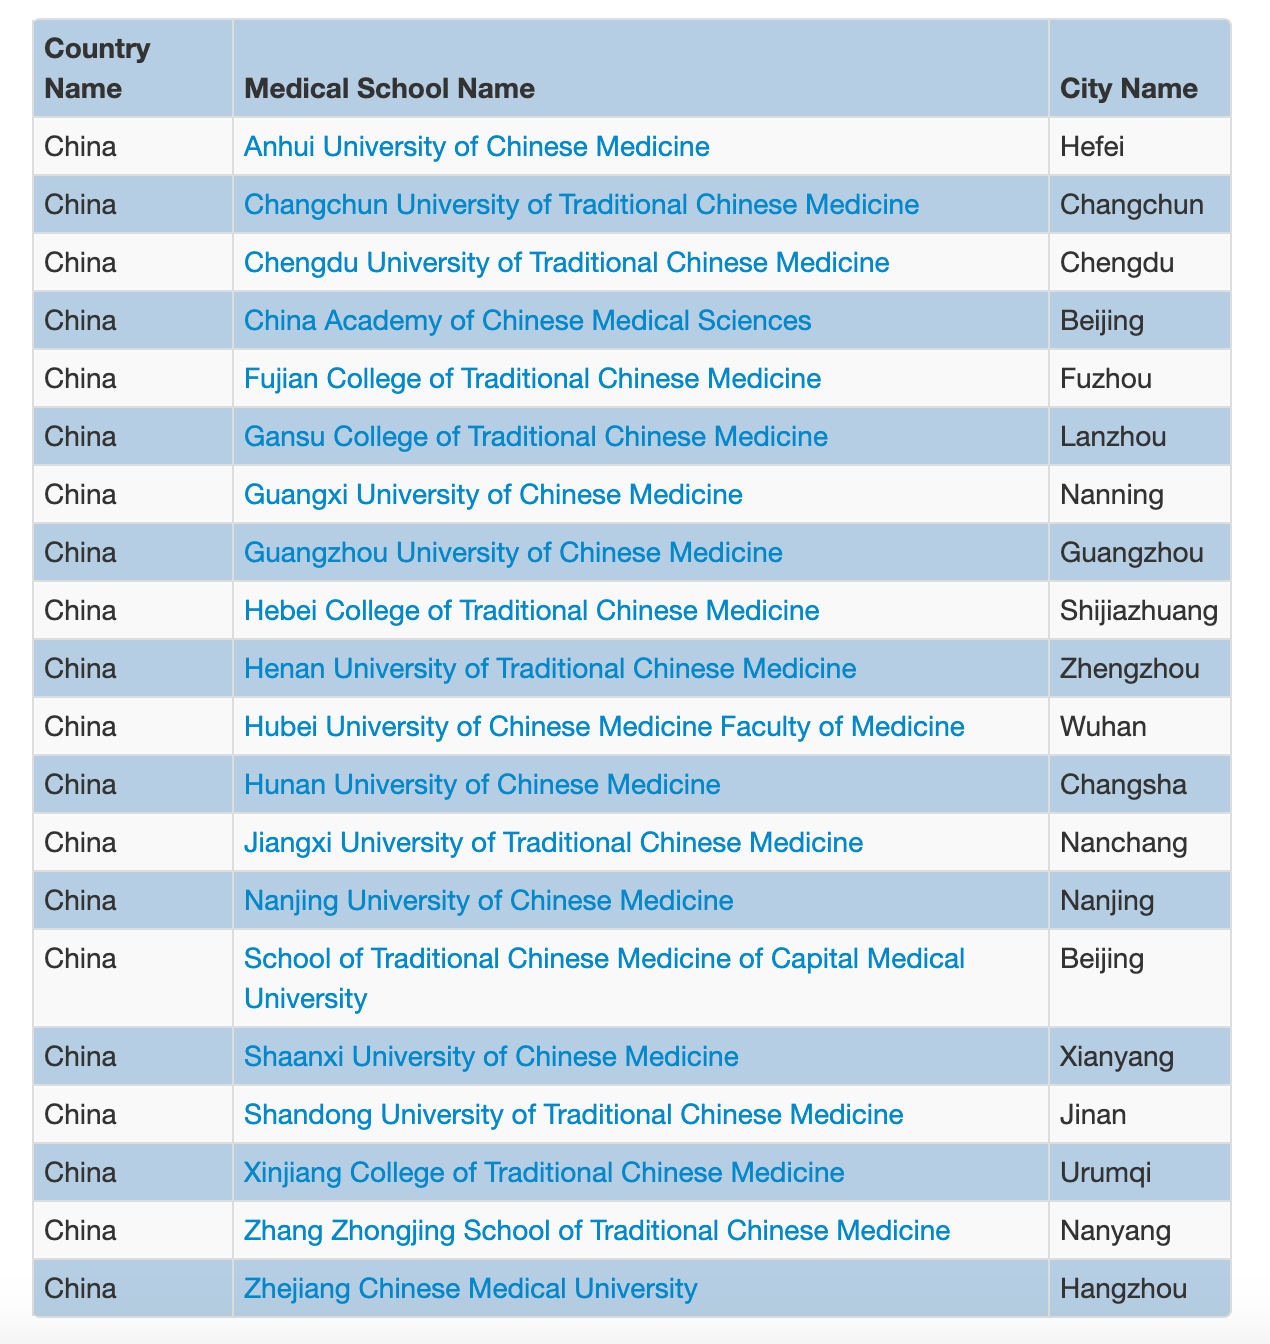 目前世界医学院校名录中仍收录有20所中国中医药院校。《世界医学院校名录》网页截图